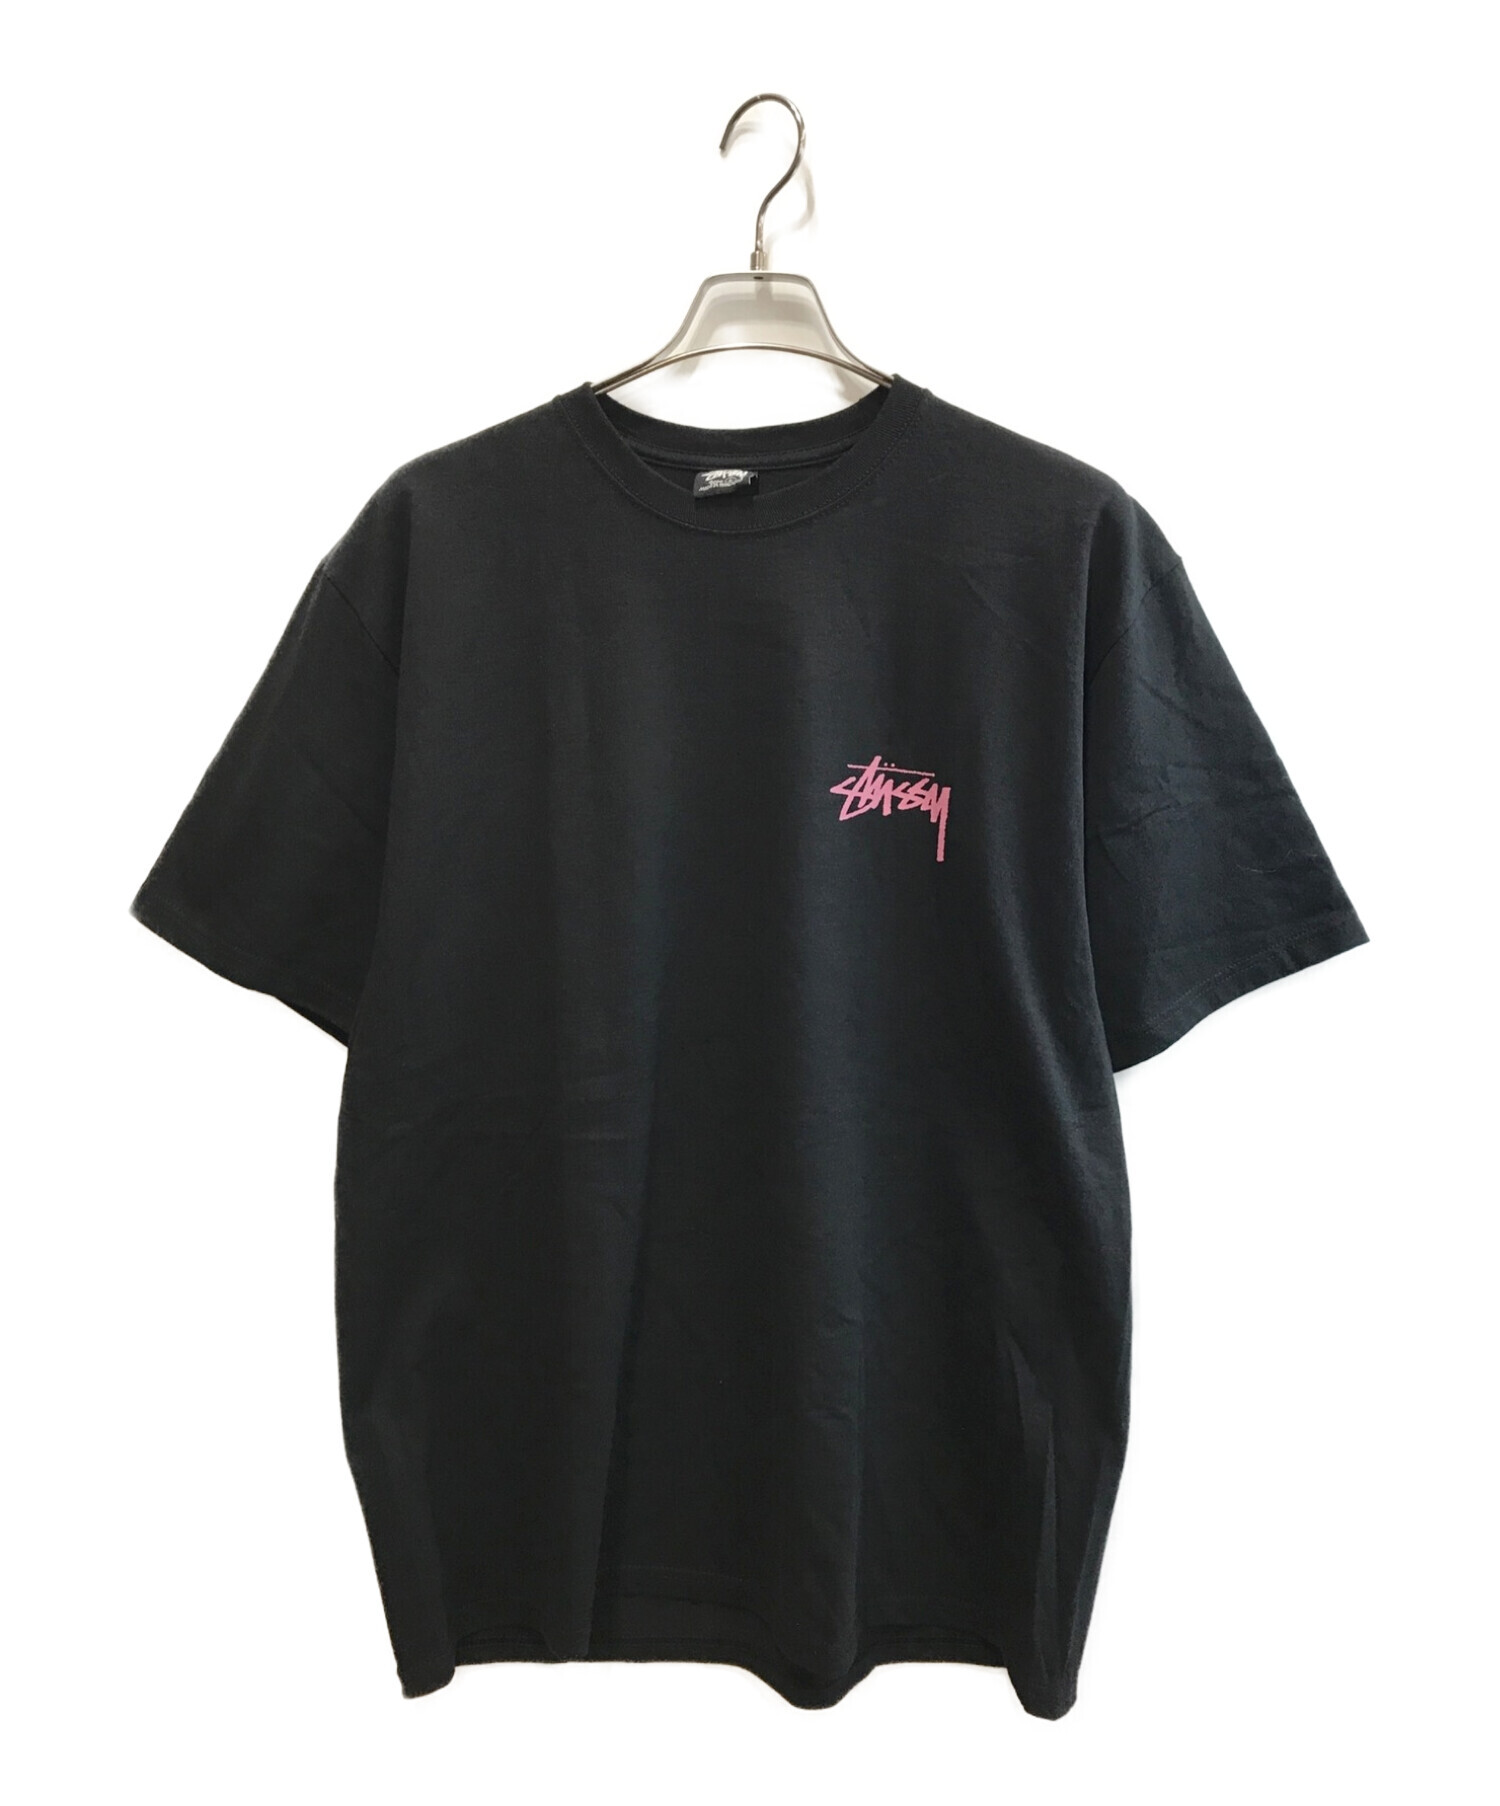 メンズ国内完売 Stussy Skate Tough T-Shirt Tシャツ L